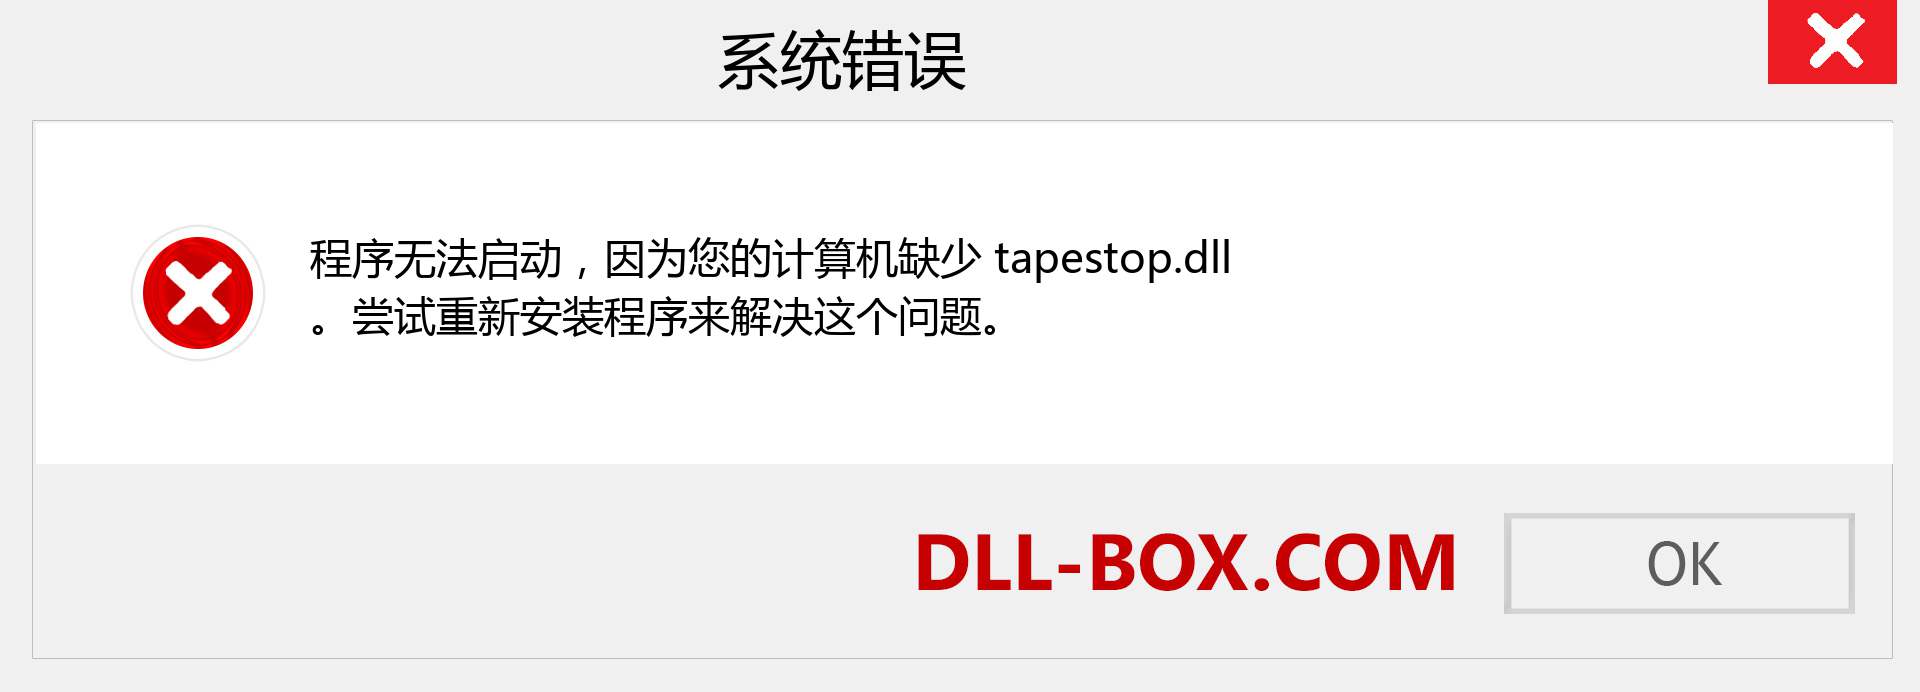 tapestop.dll 文件丢失？。 适用于 Windows 7、8、10 的下载 - 修复 Windows、照片、图像上的 tapestop dll 丢失错误